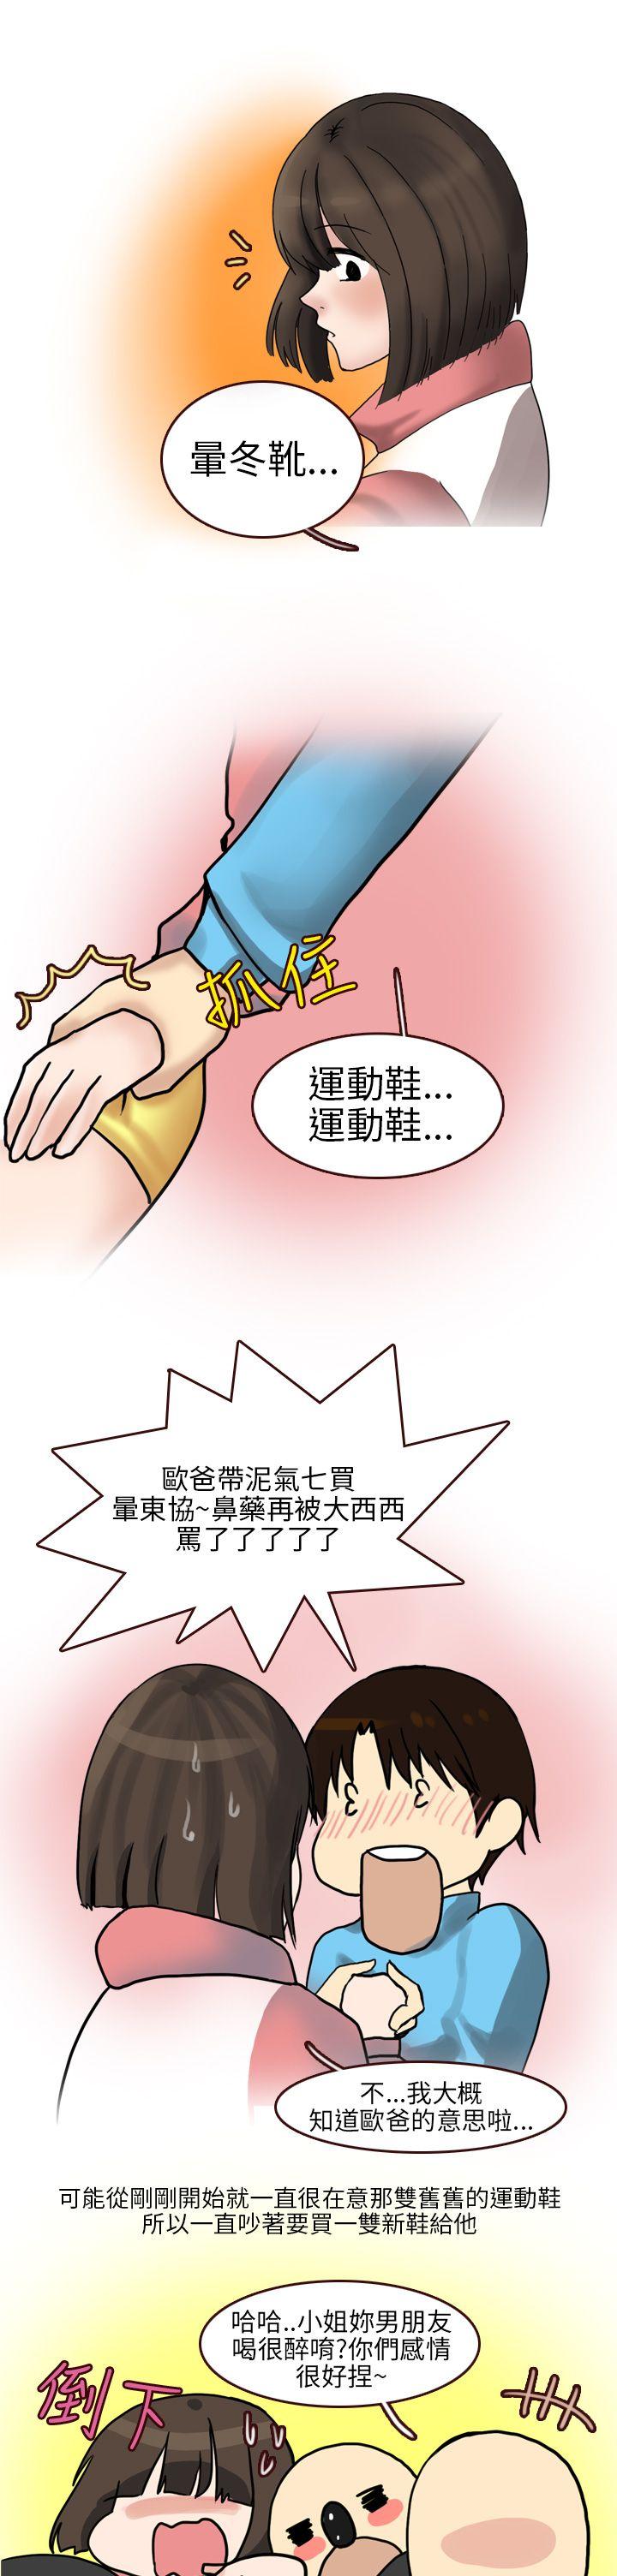 秘密Story第二季  与体大女生的恋爱(上) 漫画图片9.jpg